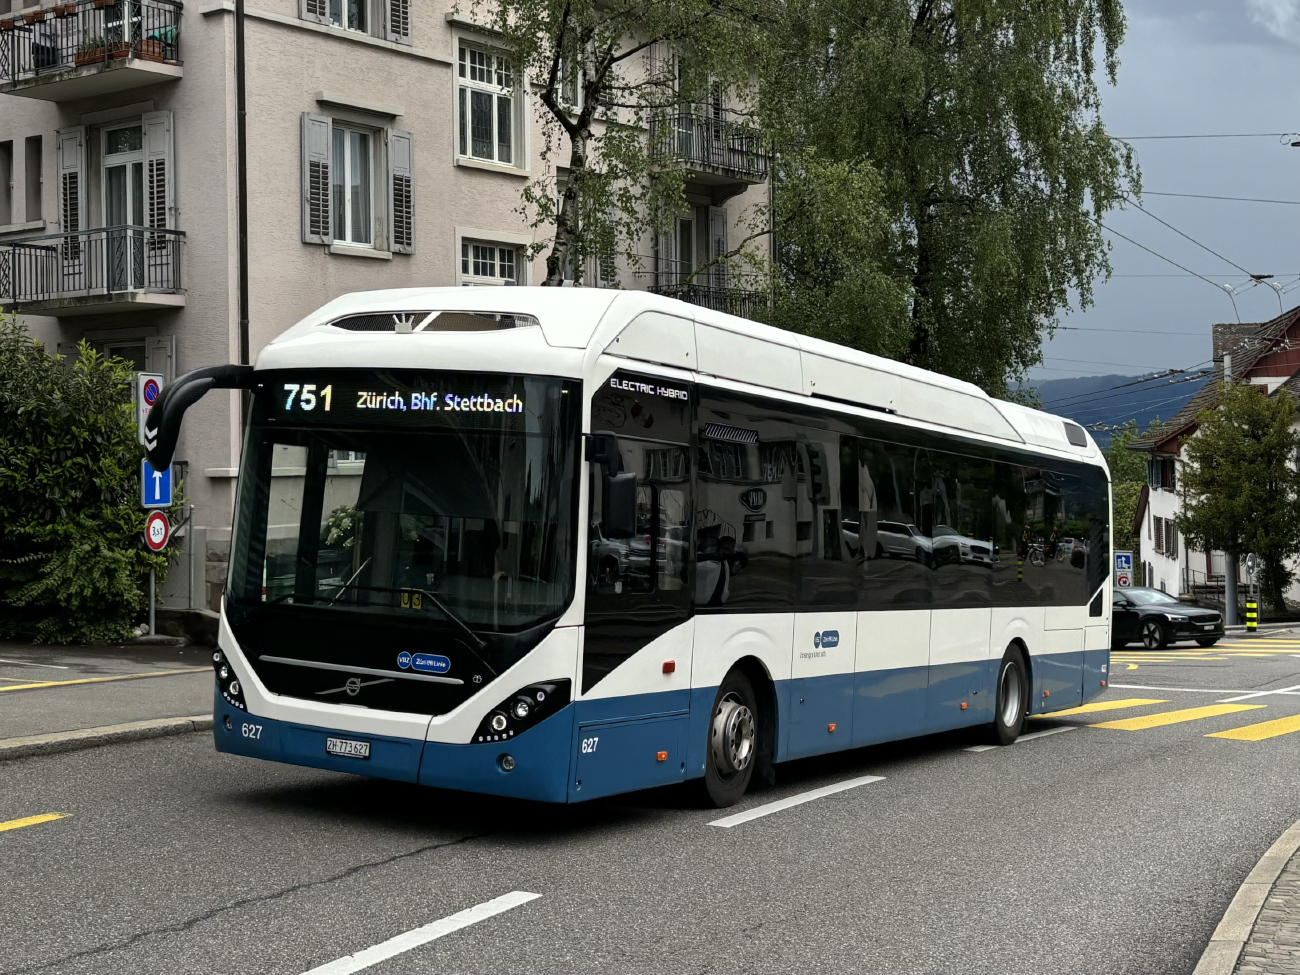 Zurich, Volvo 7900 Electric Hybrid No. 627